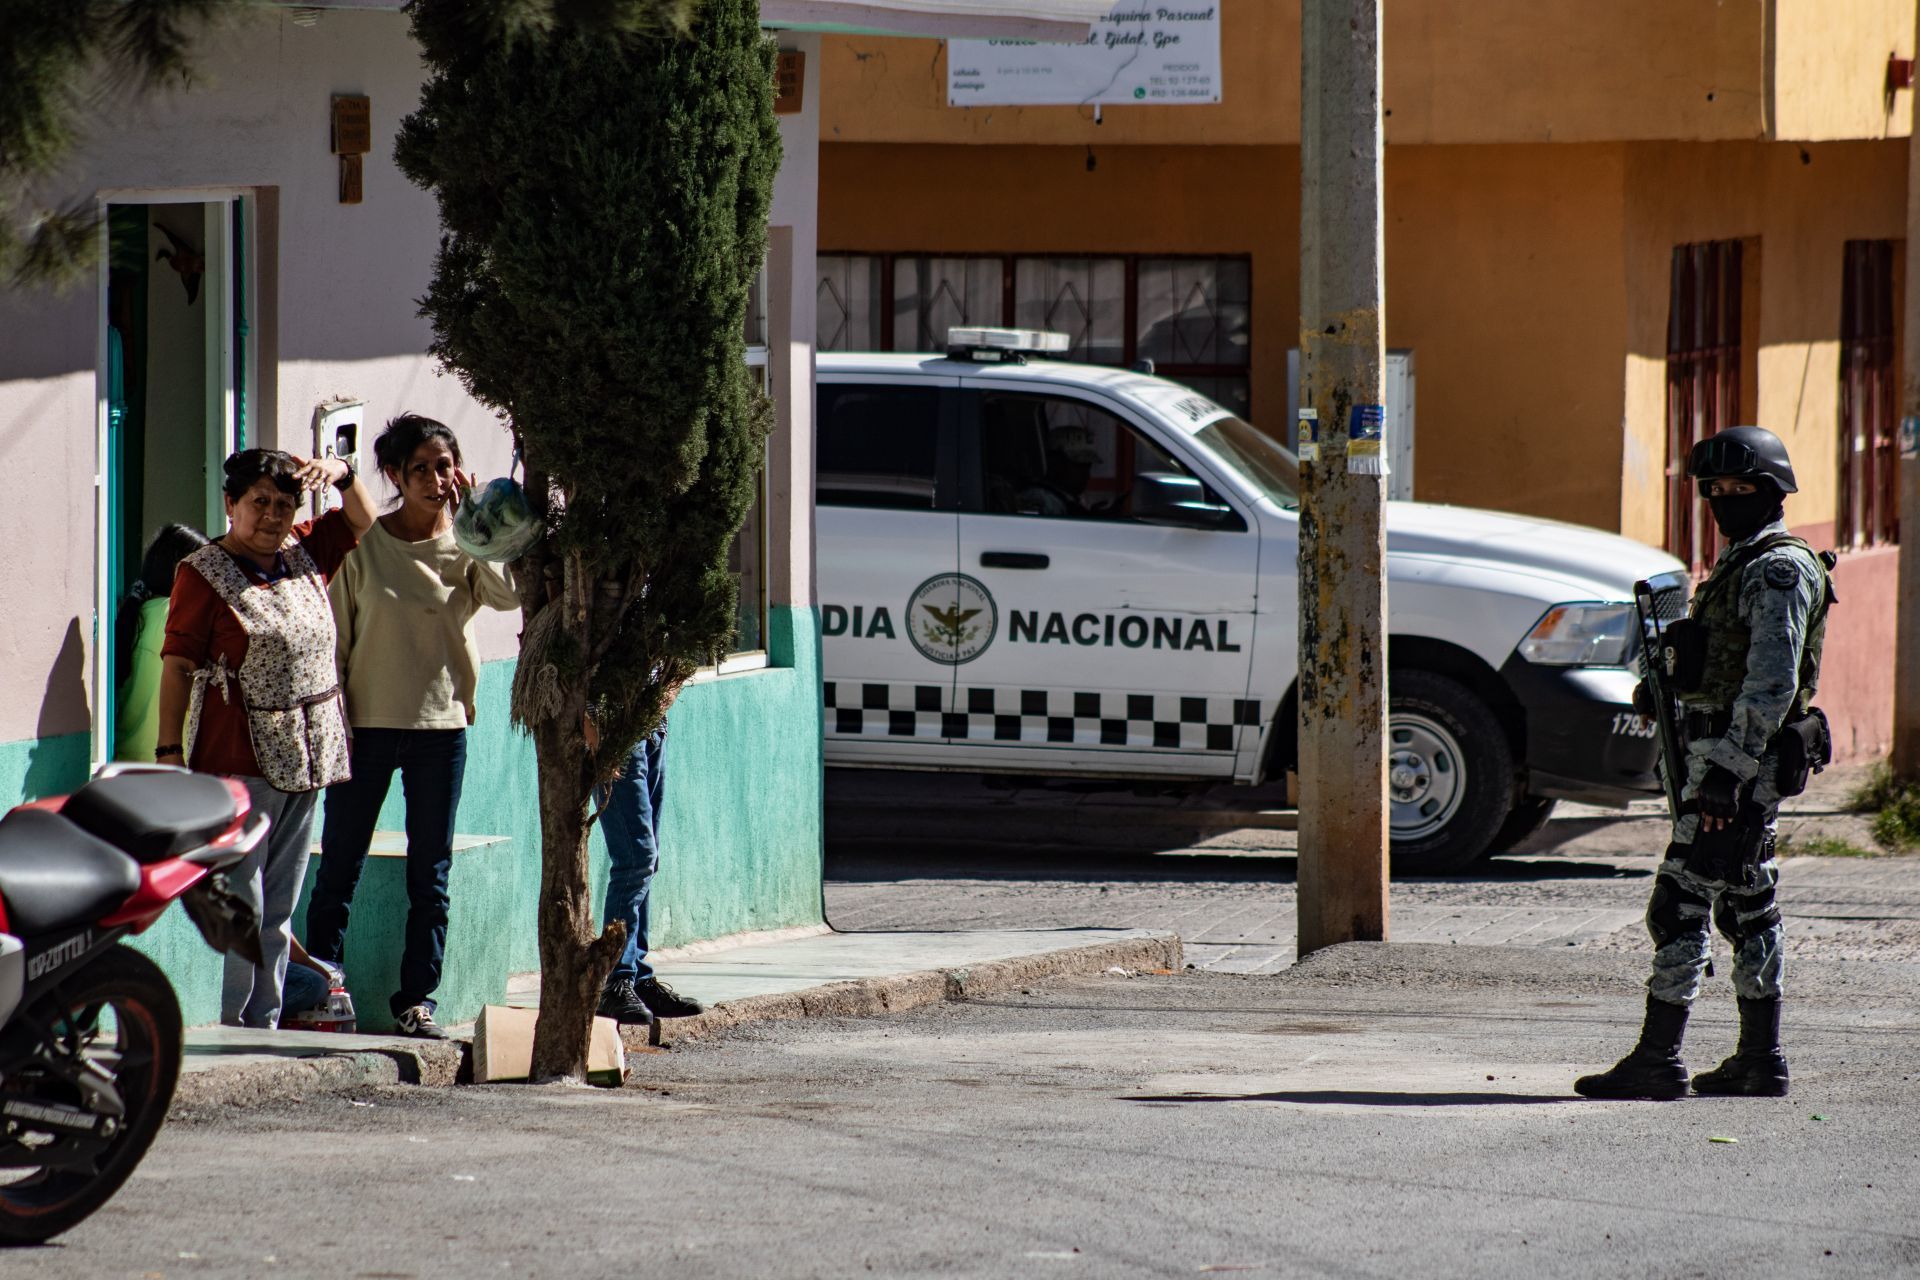 Balacera de 3 días entre Zetas y CG, deja 46 muertos en Zacatecas. - Página 2 MZPZU7W7FZFIRHW5GPKCSETNPY